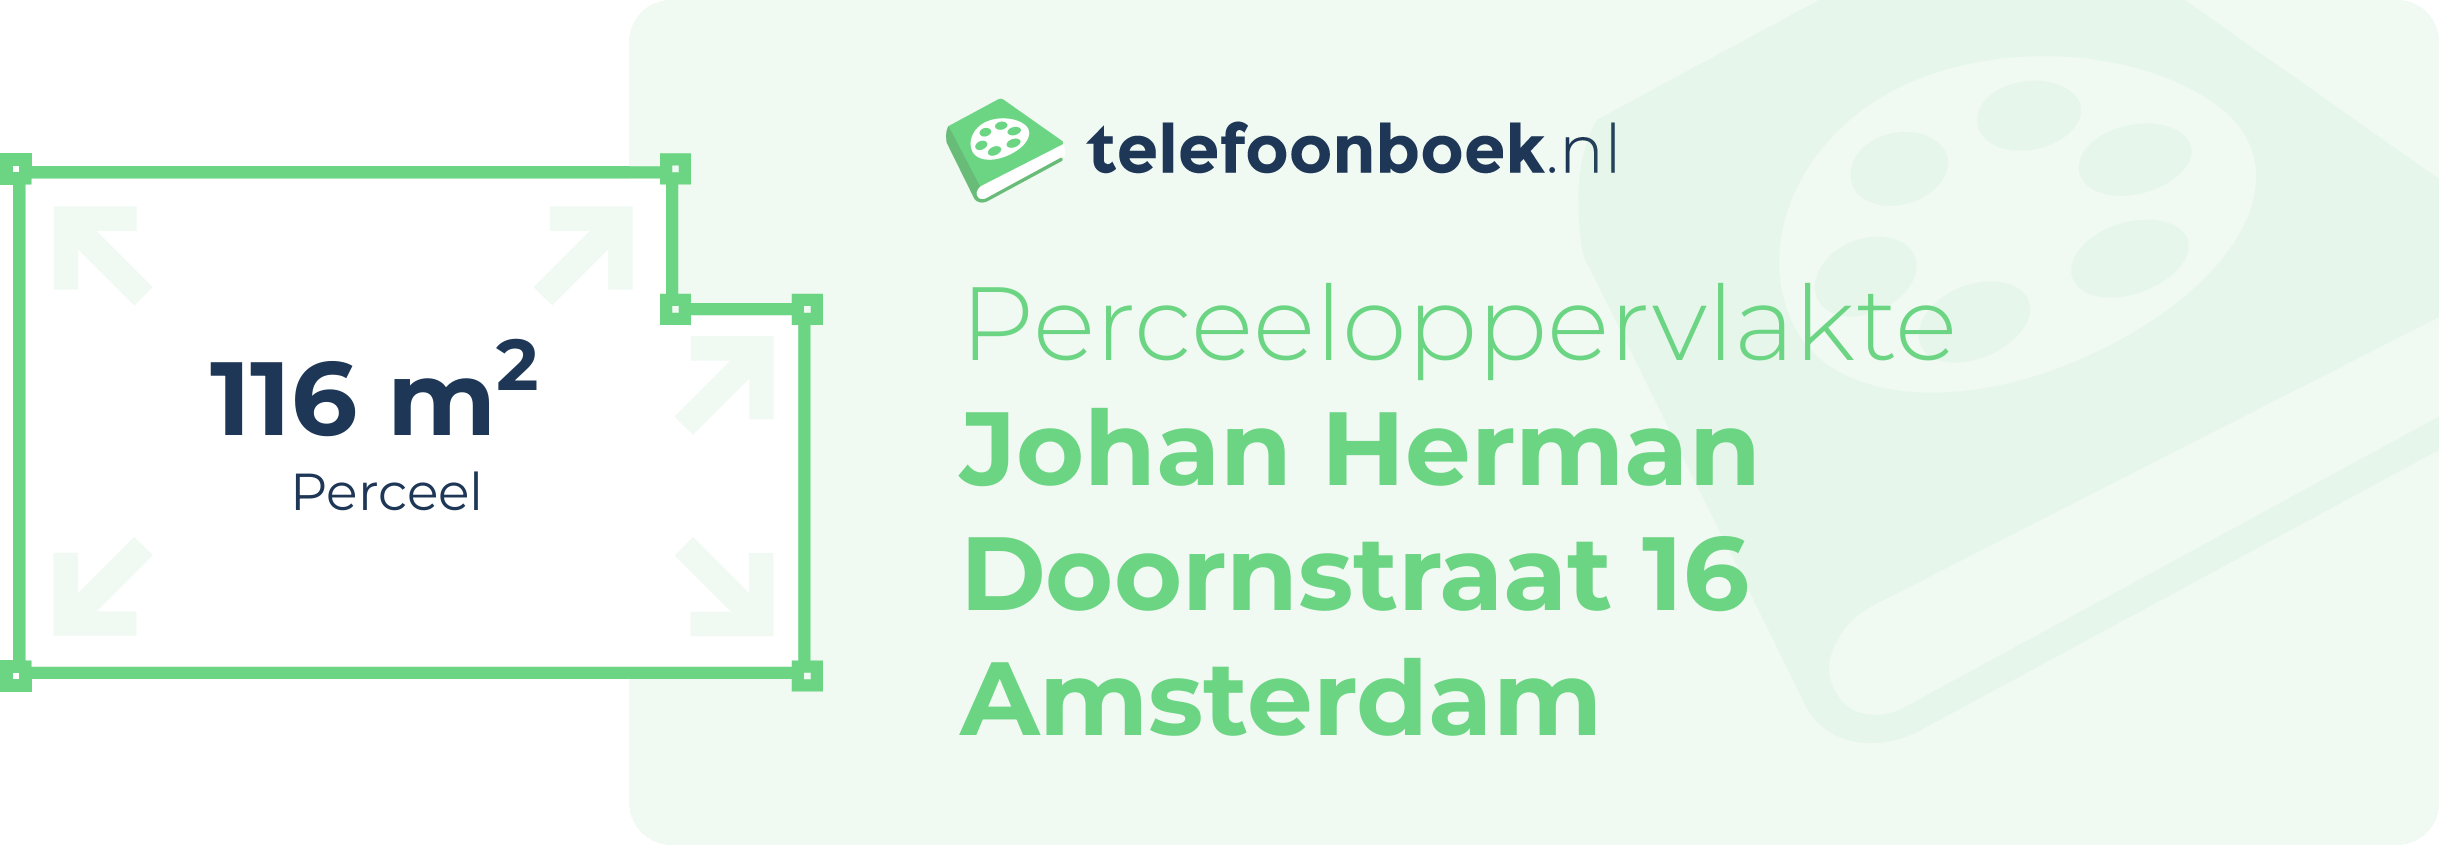 Perceeloppervlakte Johan Herman Doornstraat 16 Amsterdam